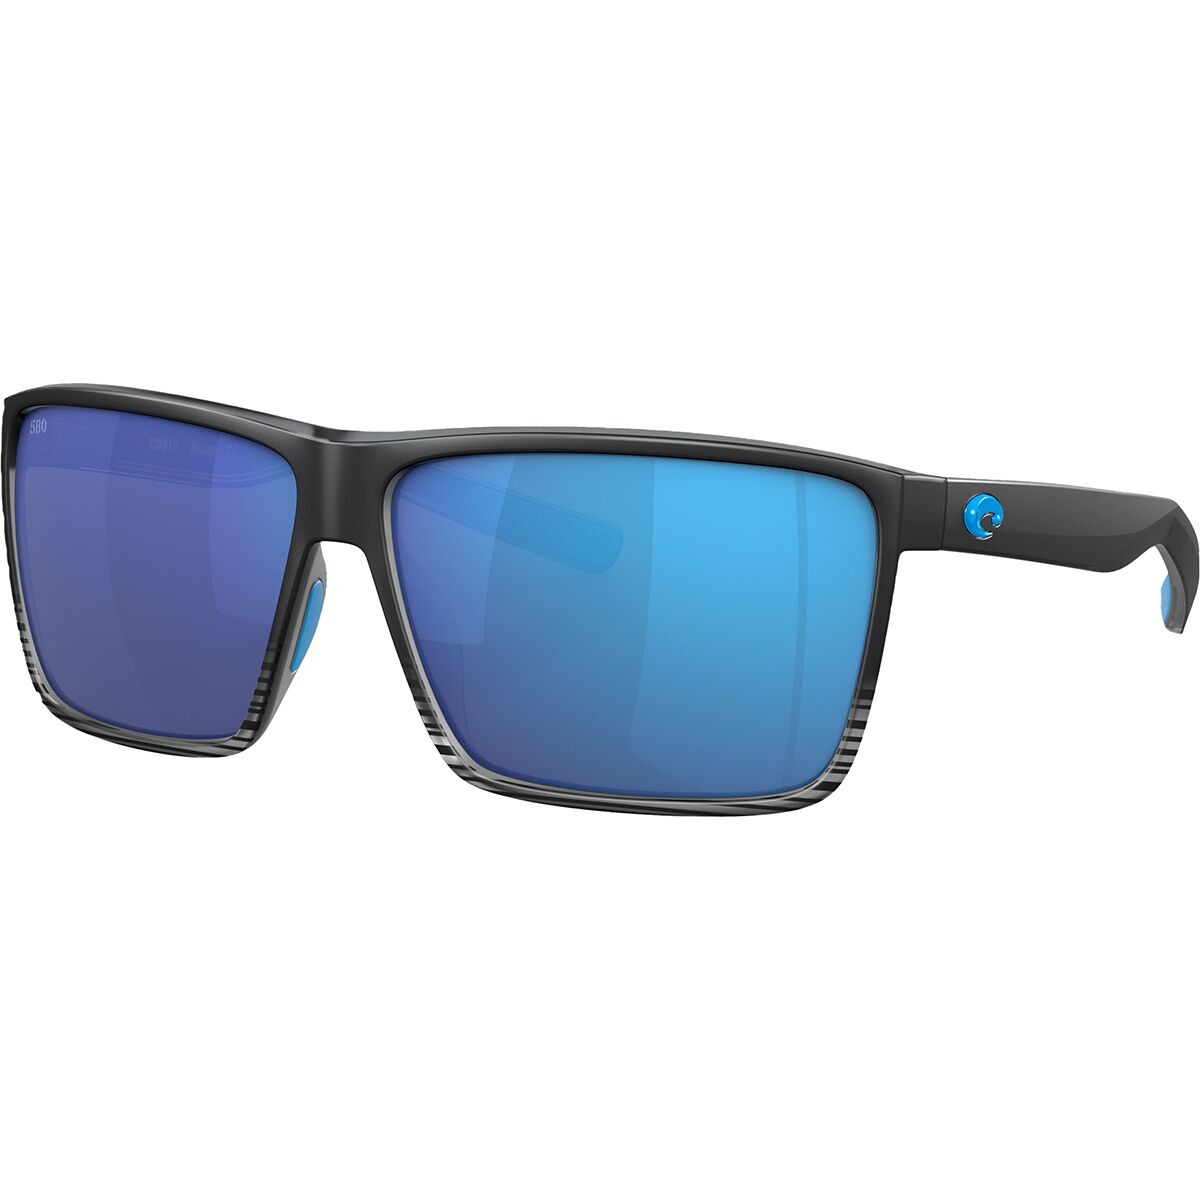 Costa Rincon 580G Polarized Sunglasses